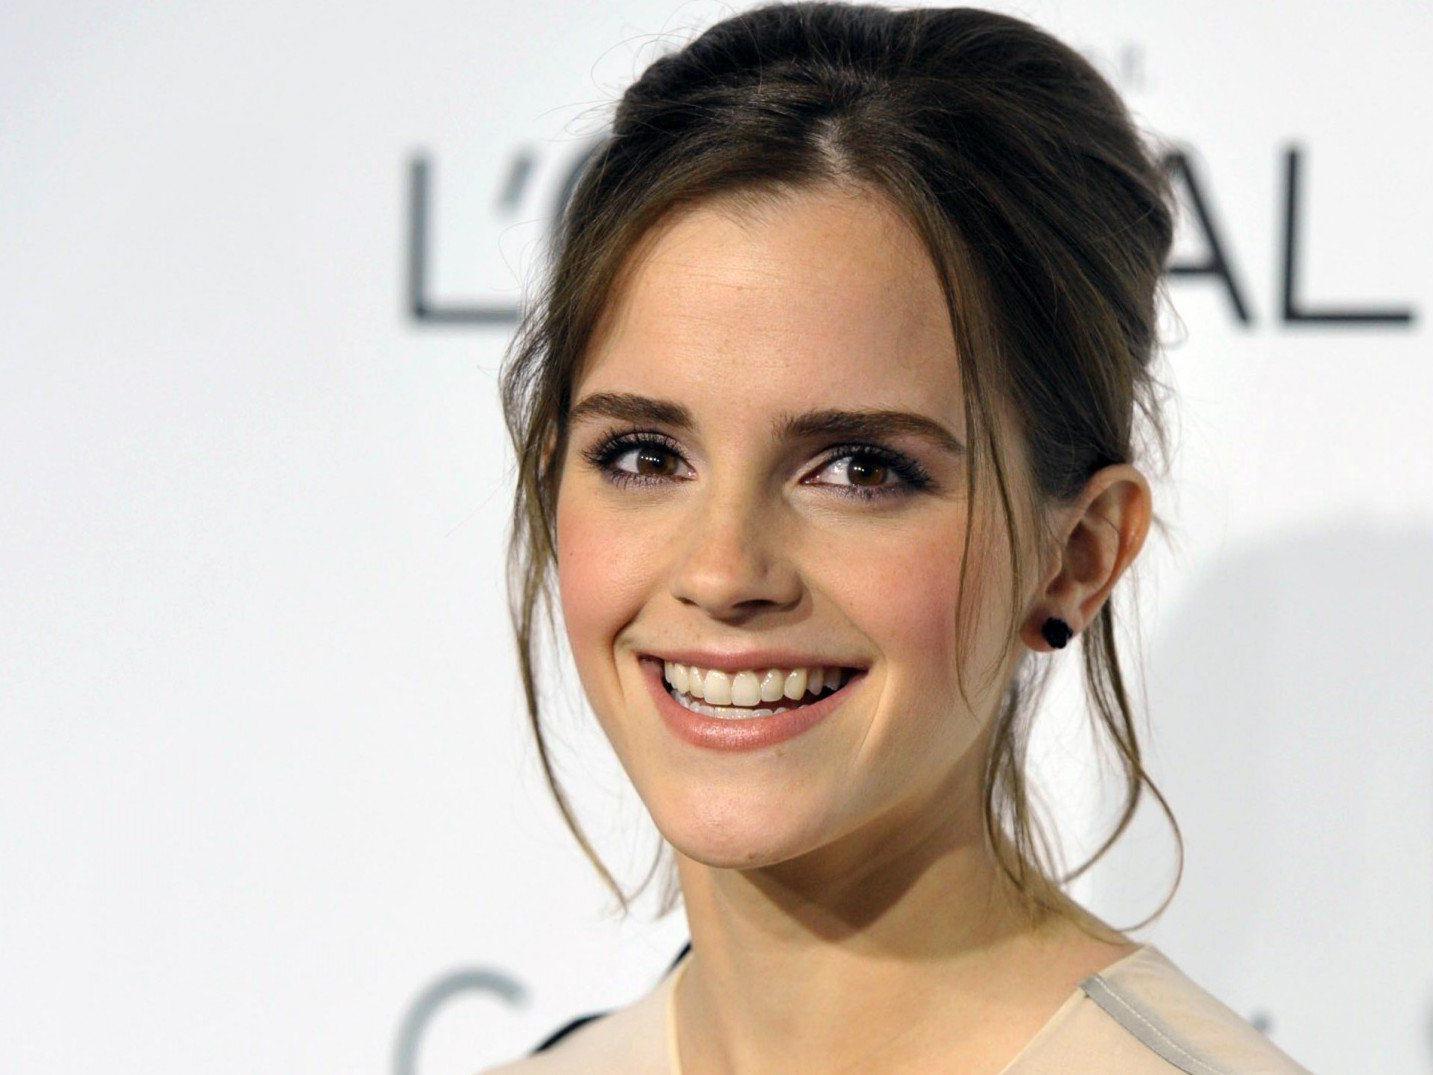 Spielt Emma Watson die Hauptrolle in "Shades of Grey"?